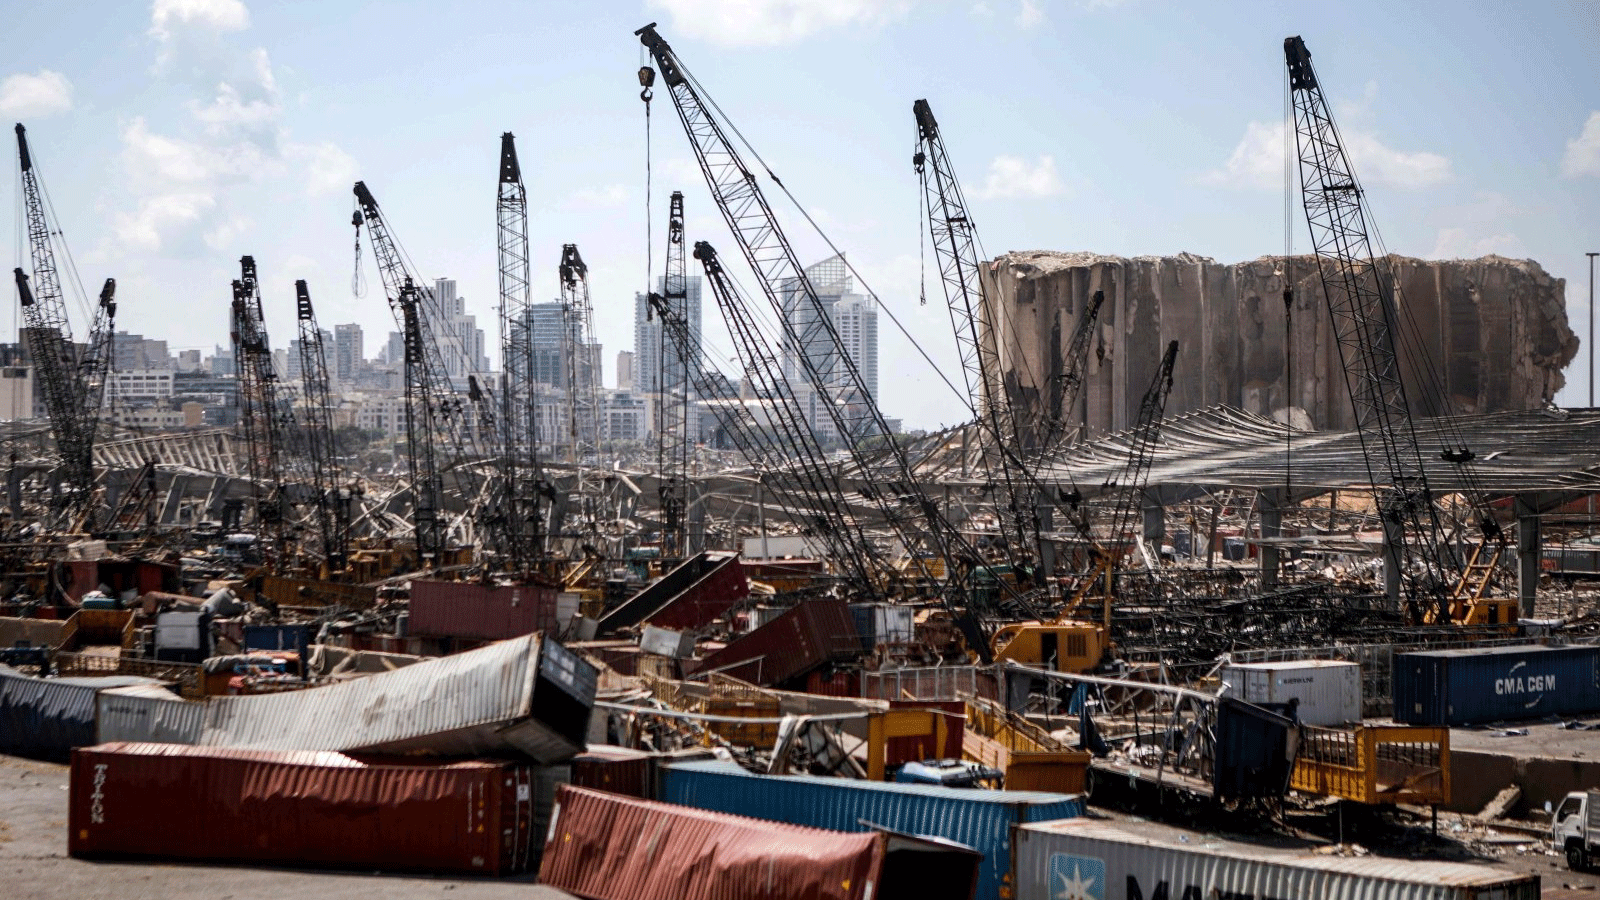 حاويات شحن مدمرة تحت رافعات على خلفية إهراءات الحبوب التي تضررت في انفجار مرفأ بيروت في العاصمة اللبنانية. 9 آب\ أغسطس 2020